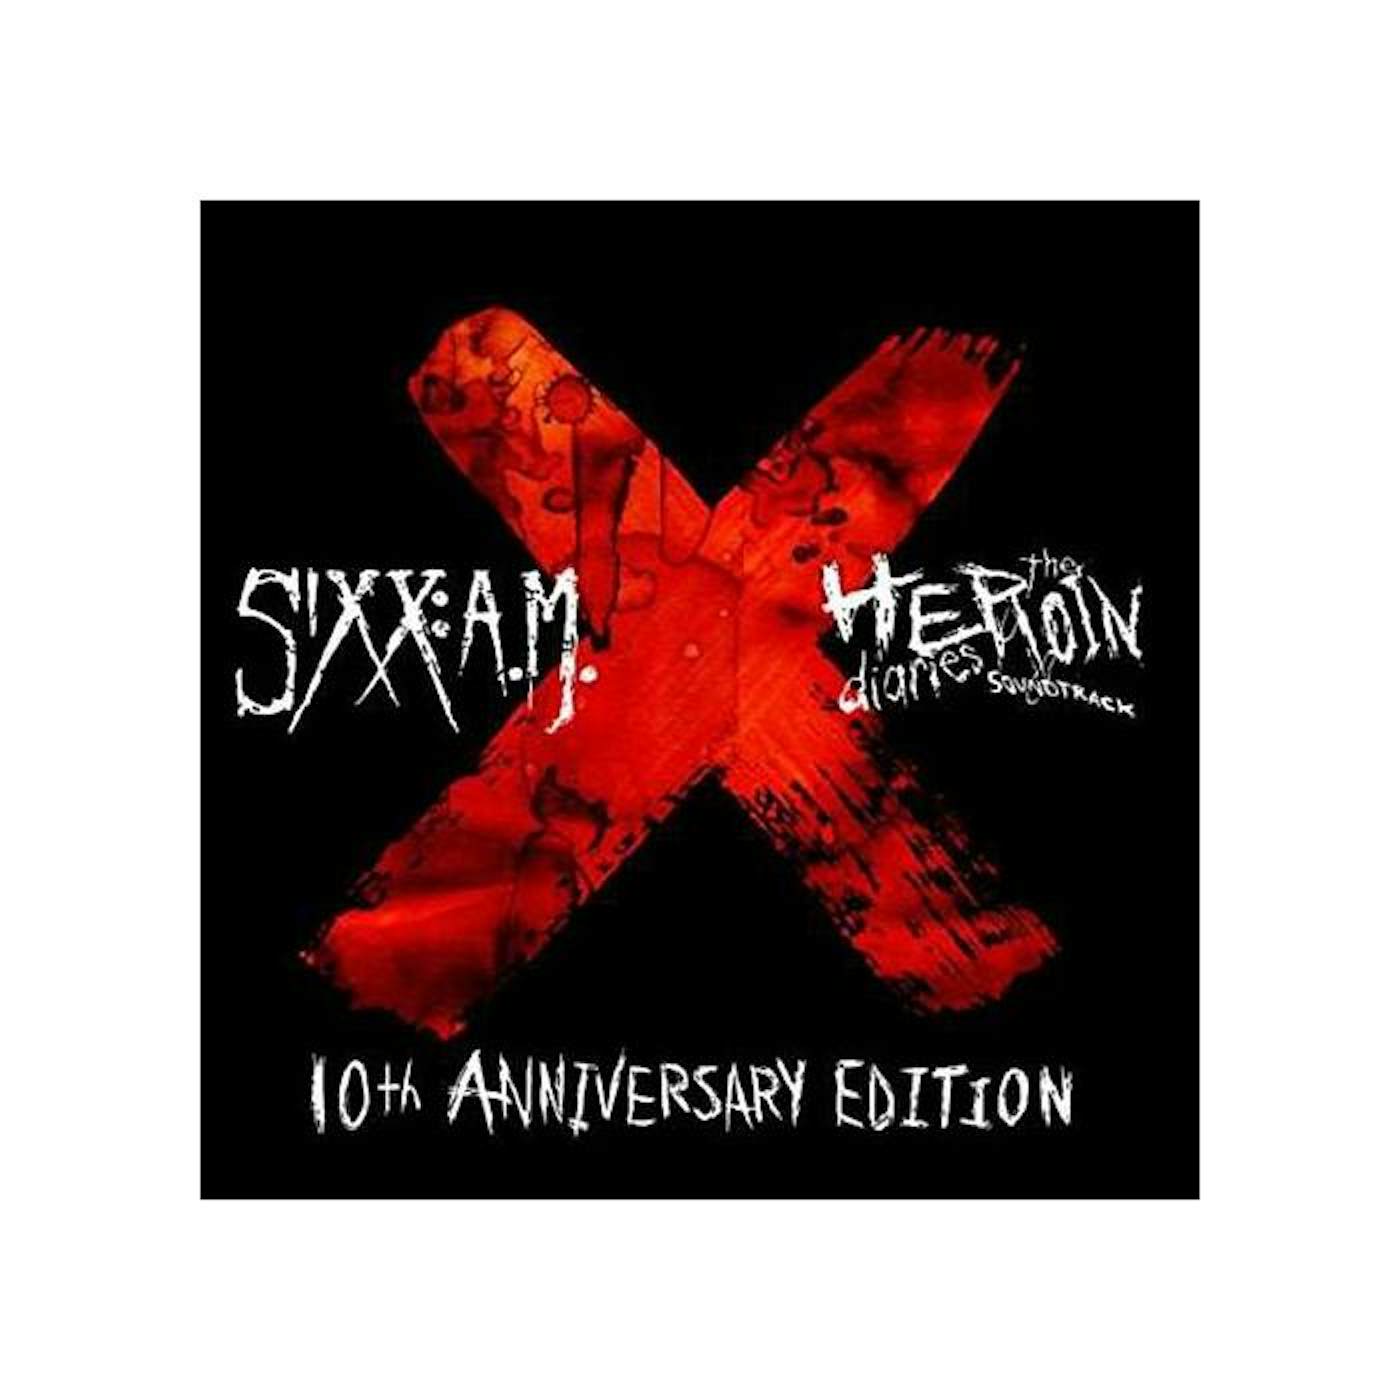 Sixx:A.M. - Heroin Diaries 10th Anniversary Edition CD